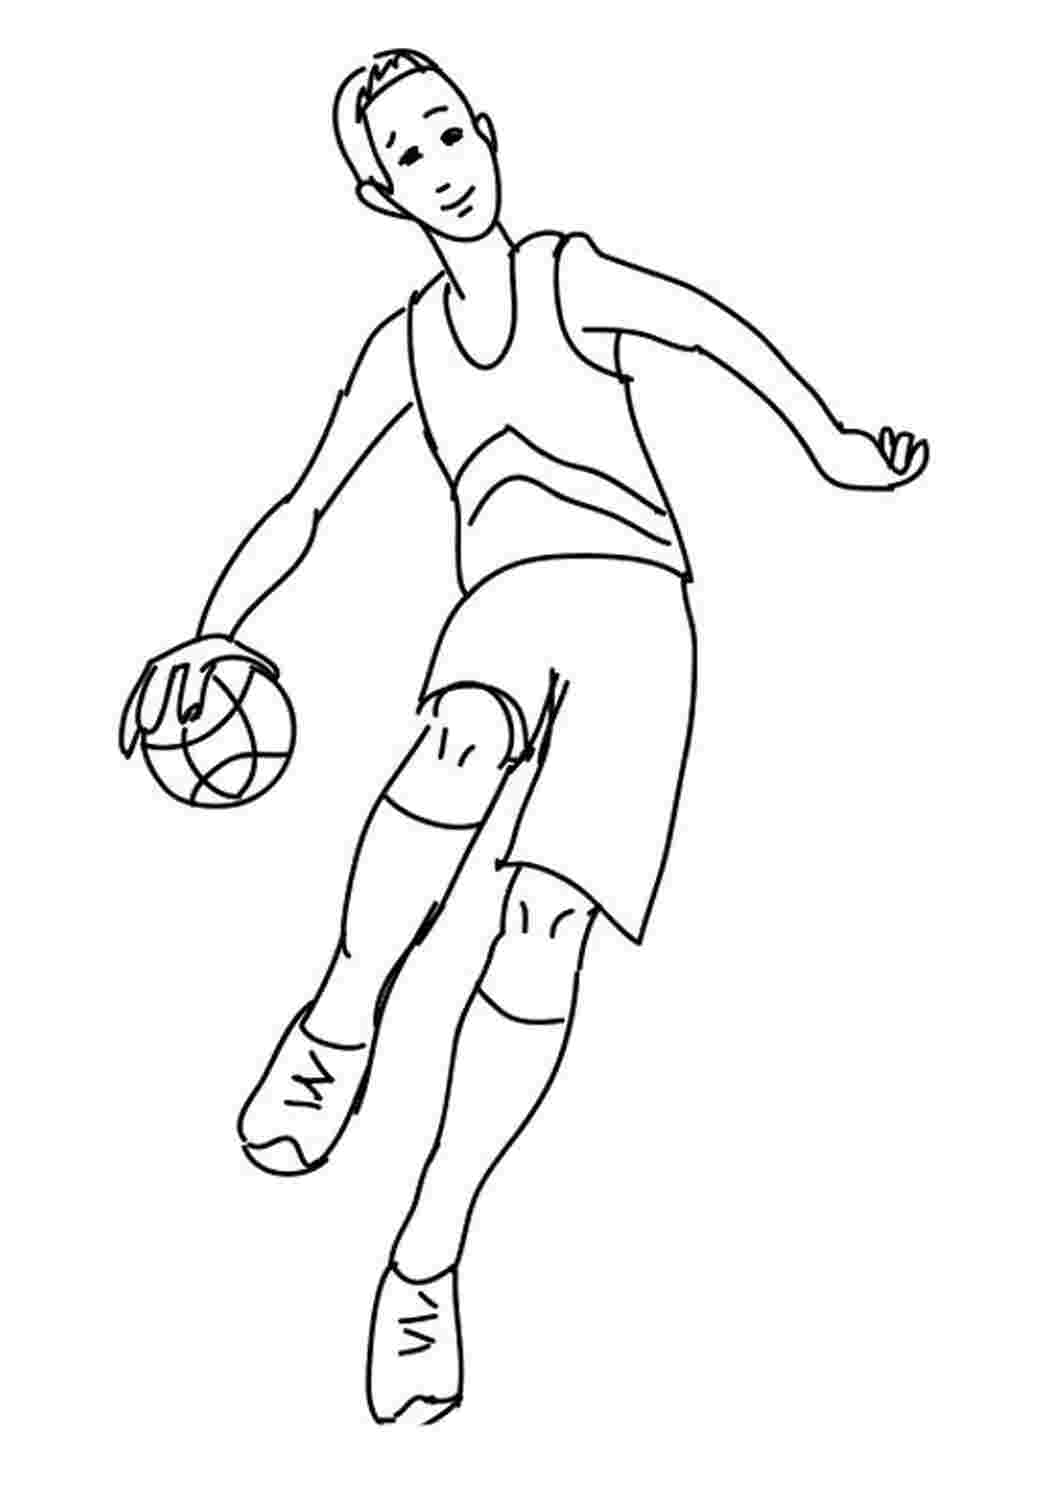 Раскраска для детей волейбол и баскетбол